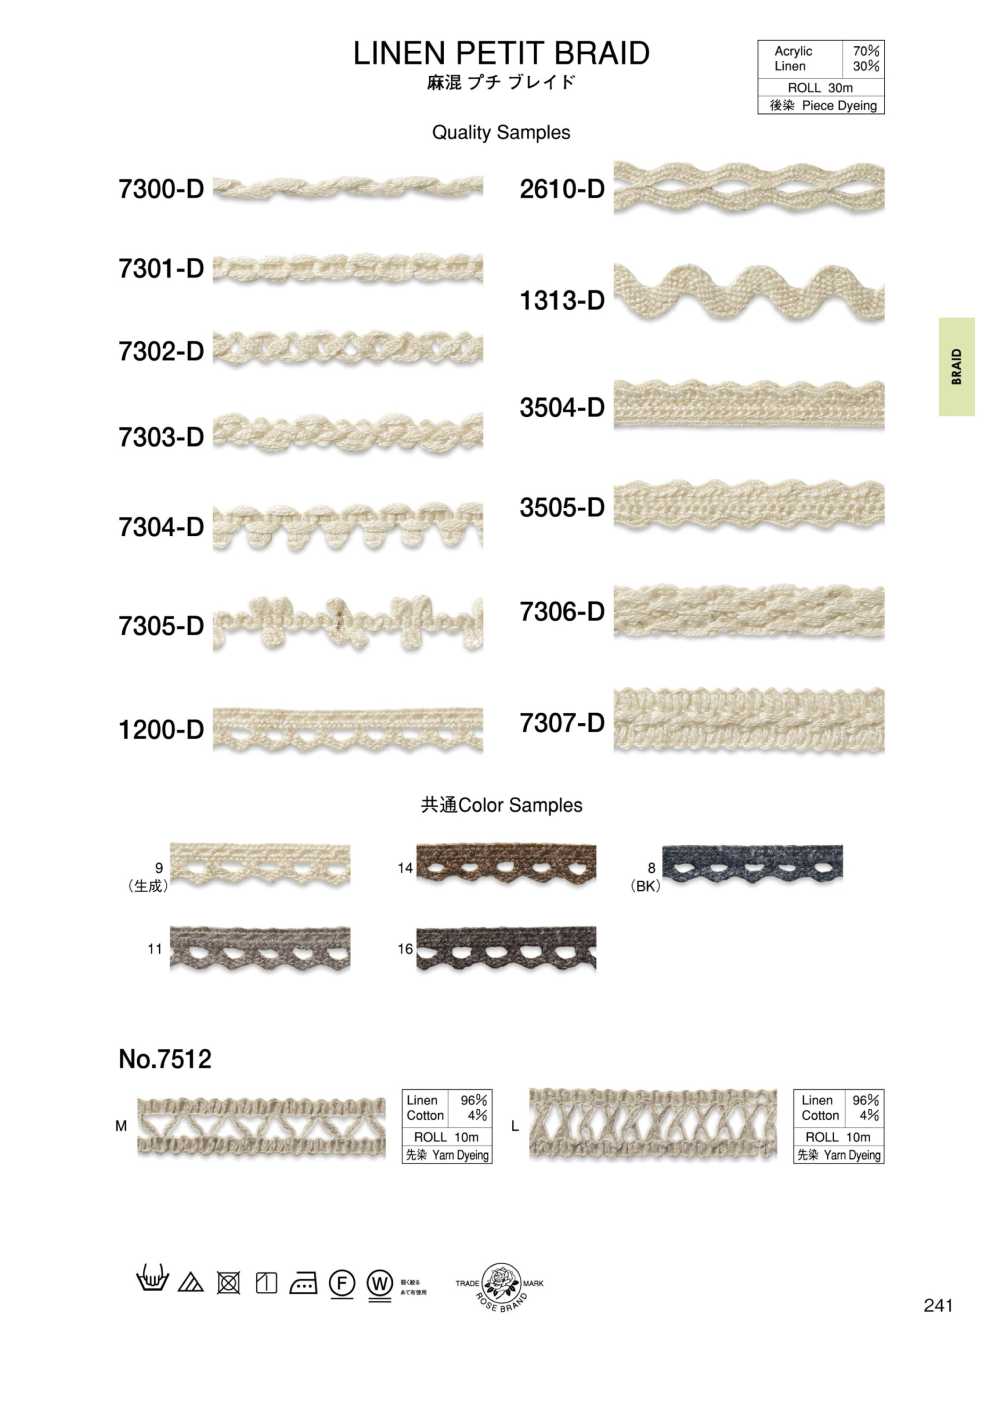 2610-D Linen Blend Petite Braid[Ribbon Tape Cord] ROSE BRAND (Marushin)